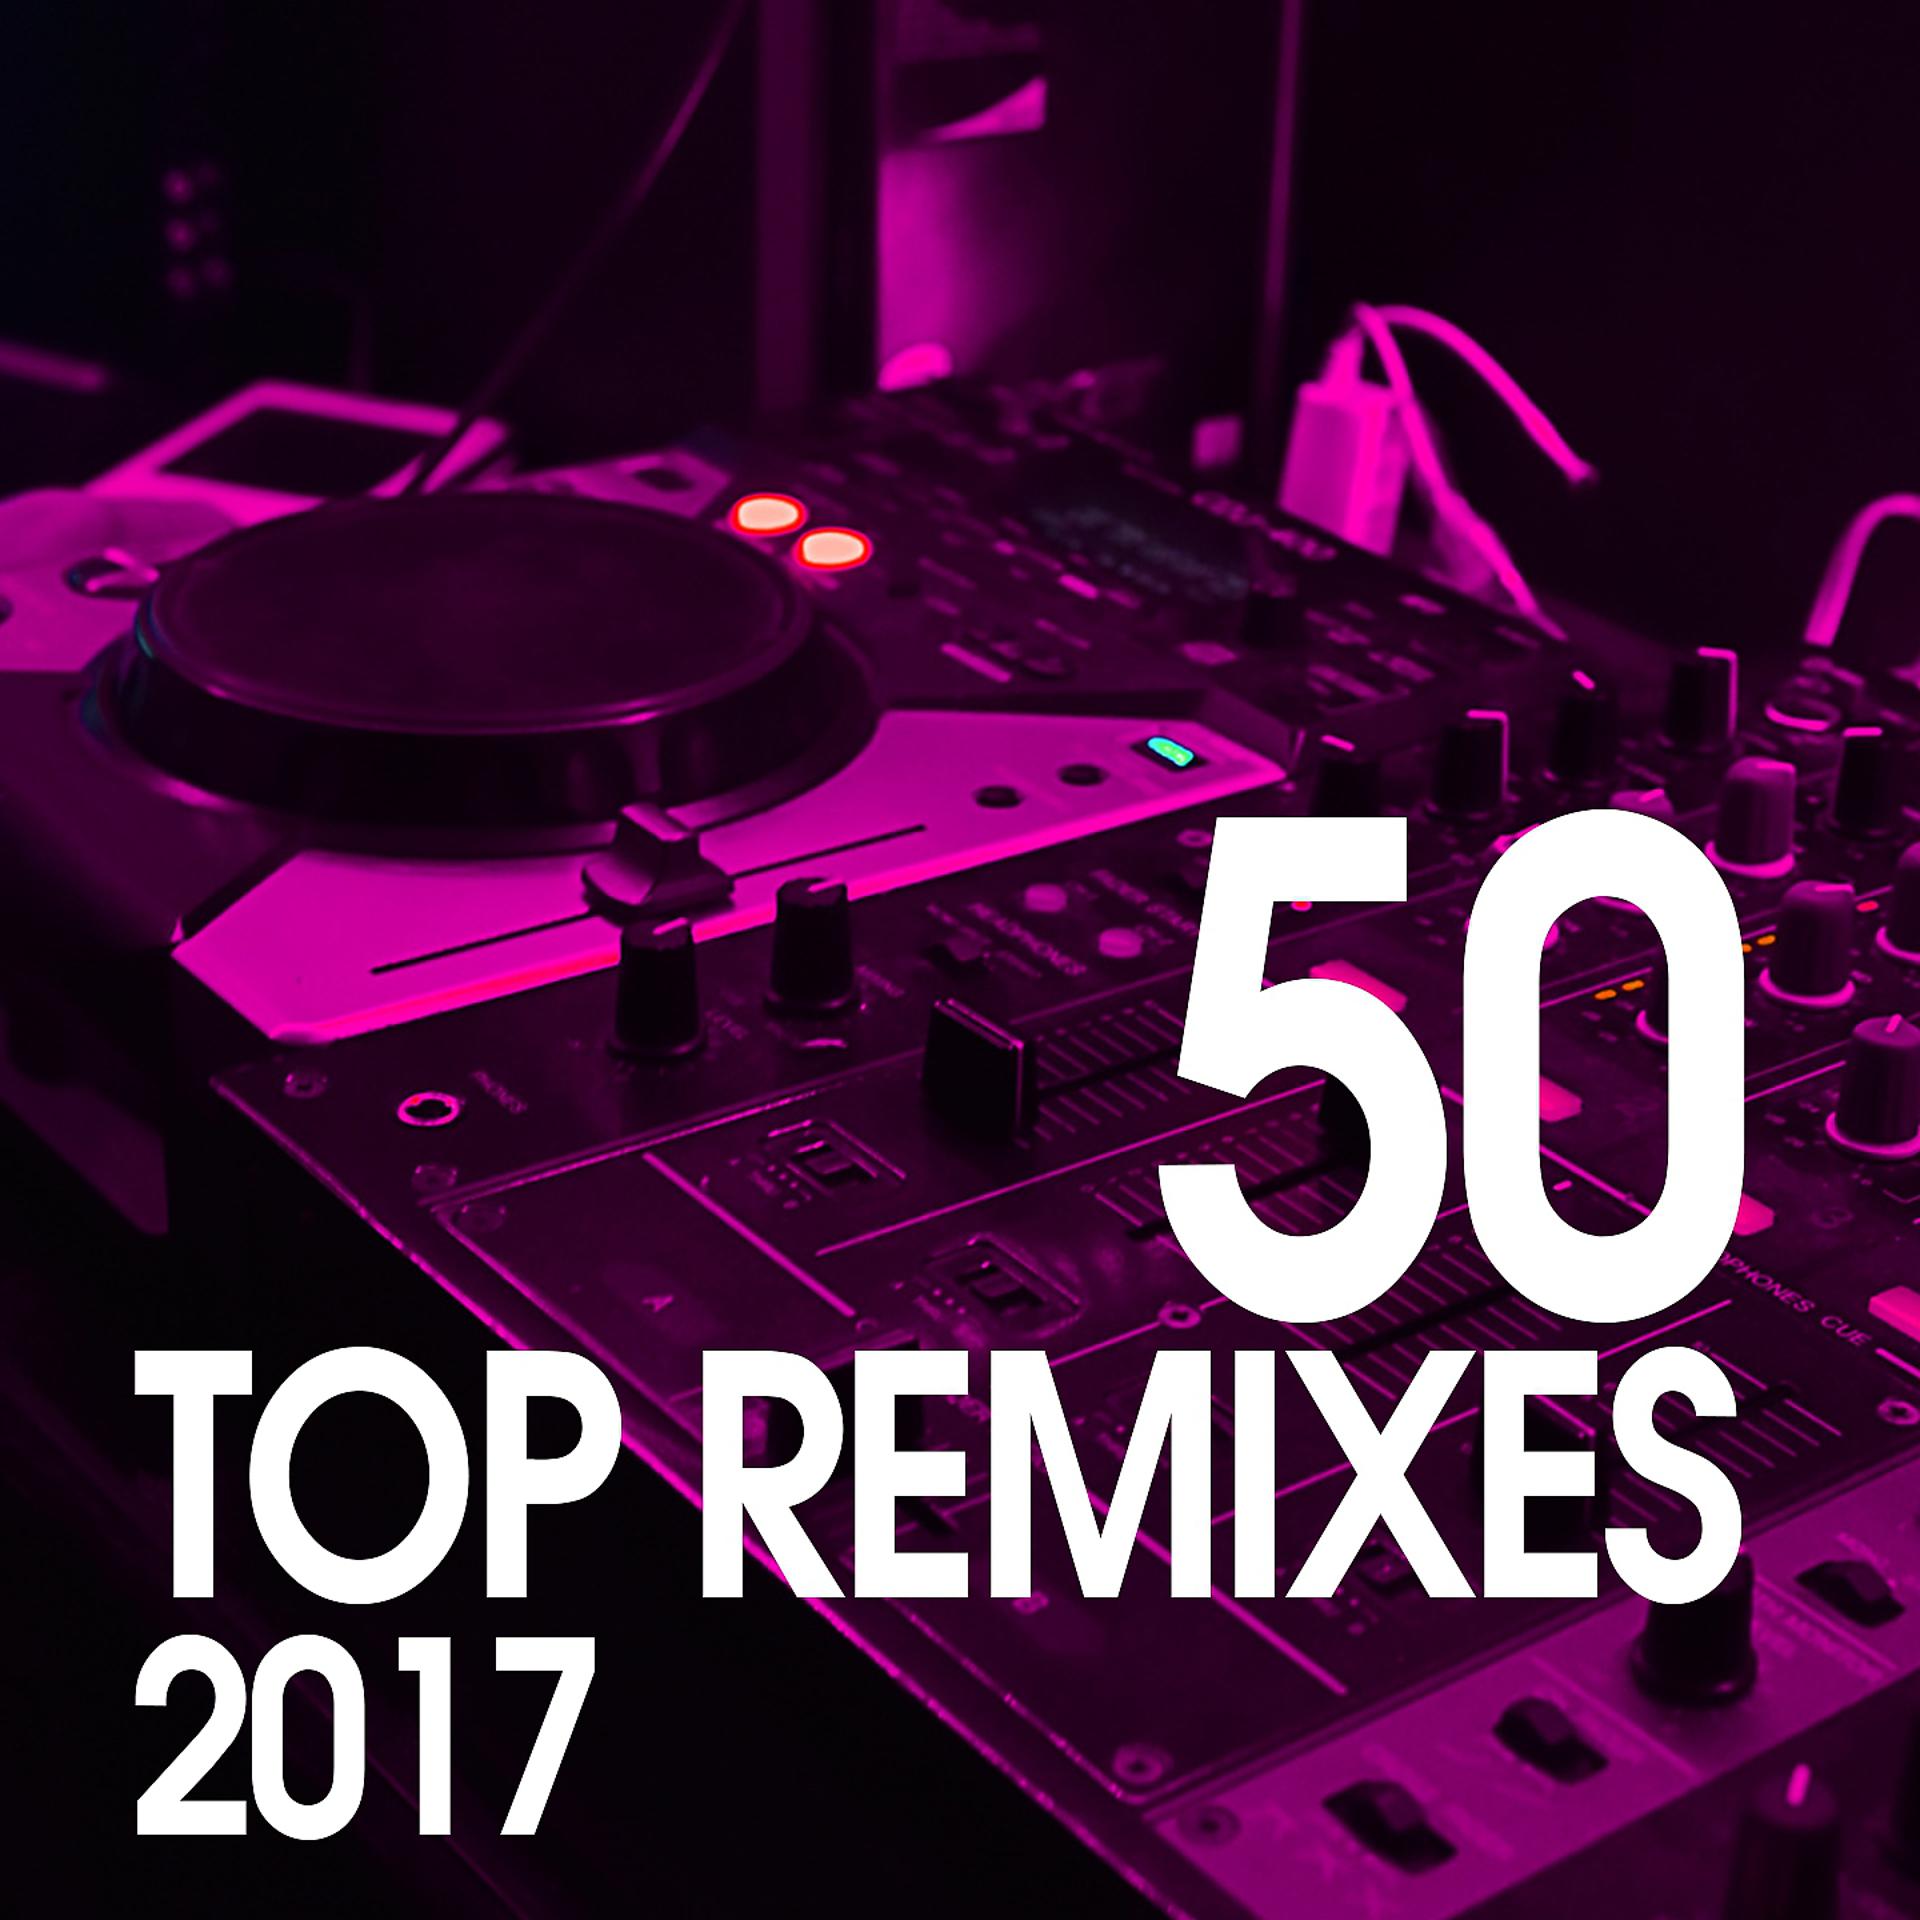 DJ Dave обложка. Top Remix. Топ 50 альбом. DJ Space c слушать. Remix 2017